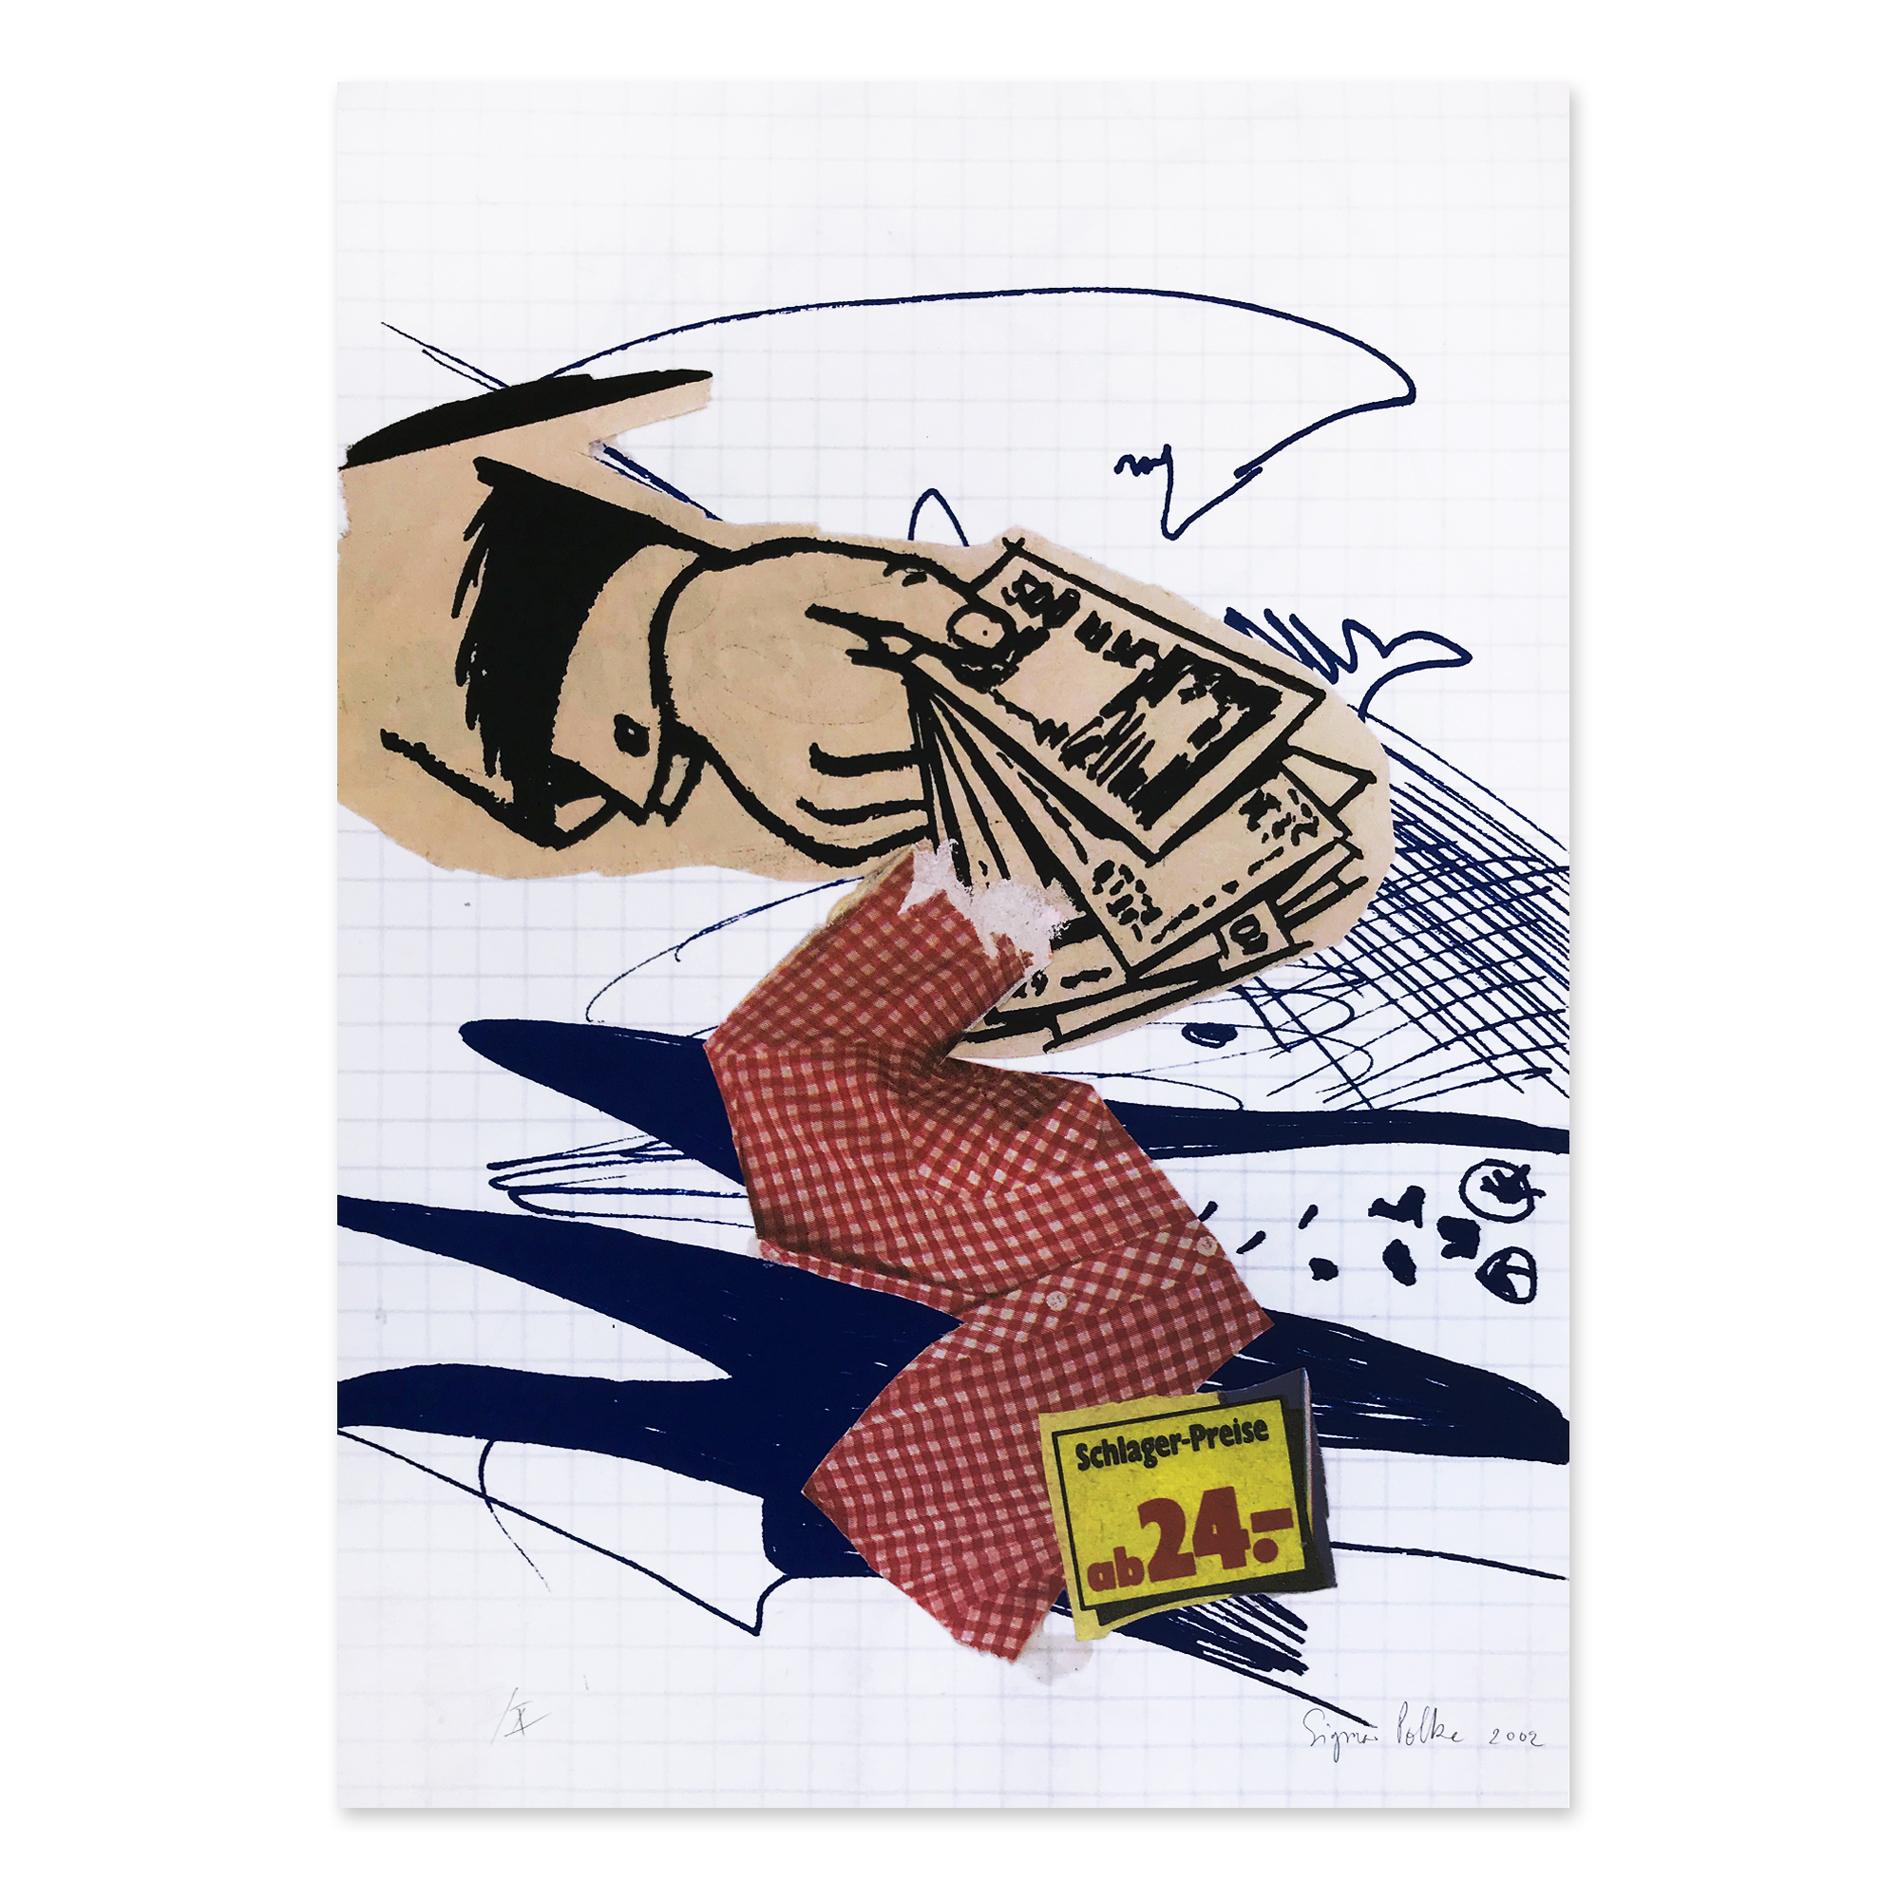 Sigmar Polke (allemand, 1941 - 2010)
Bargeld Lacht, 2002
Support : Offset couleur et sérigraphie sur carton
Dimensions : 70 × 50 cm
Édition de 70 + X : signée à la main, numérotée et datée
Condit : Excellent